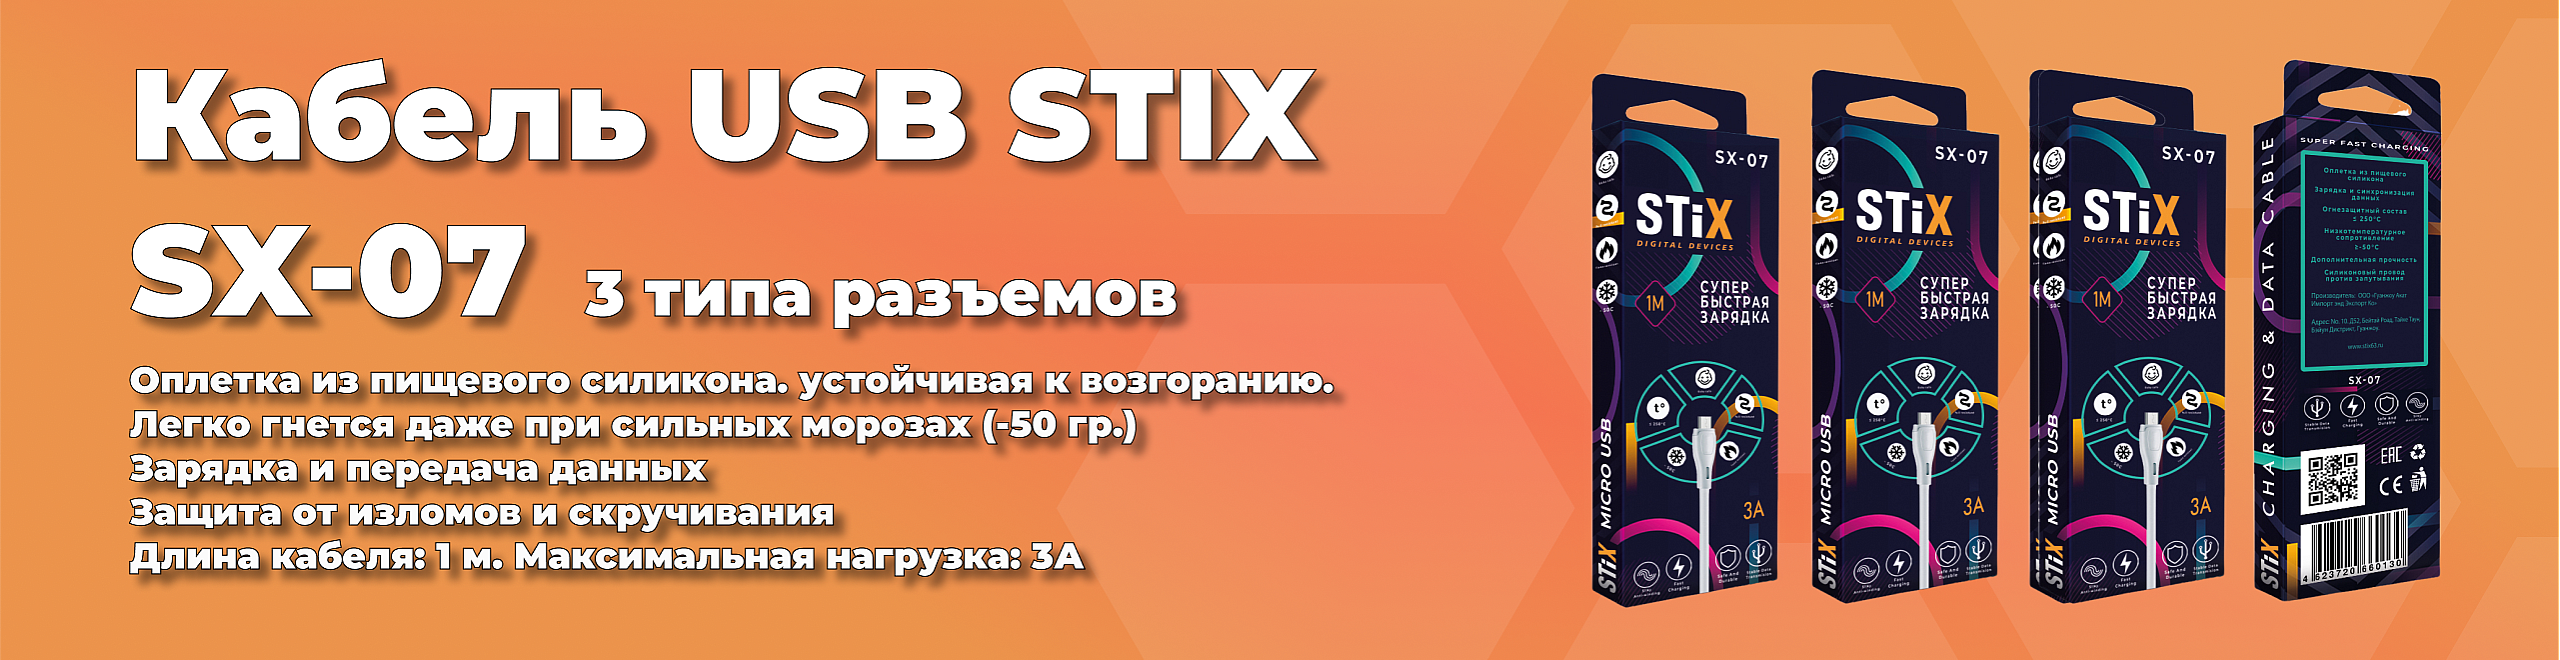 Кабель USB STIX SX-07.png